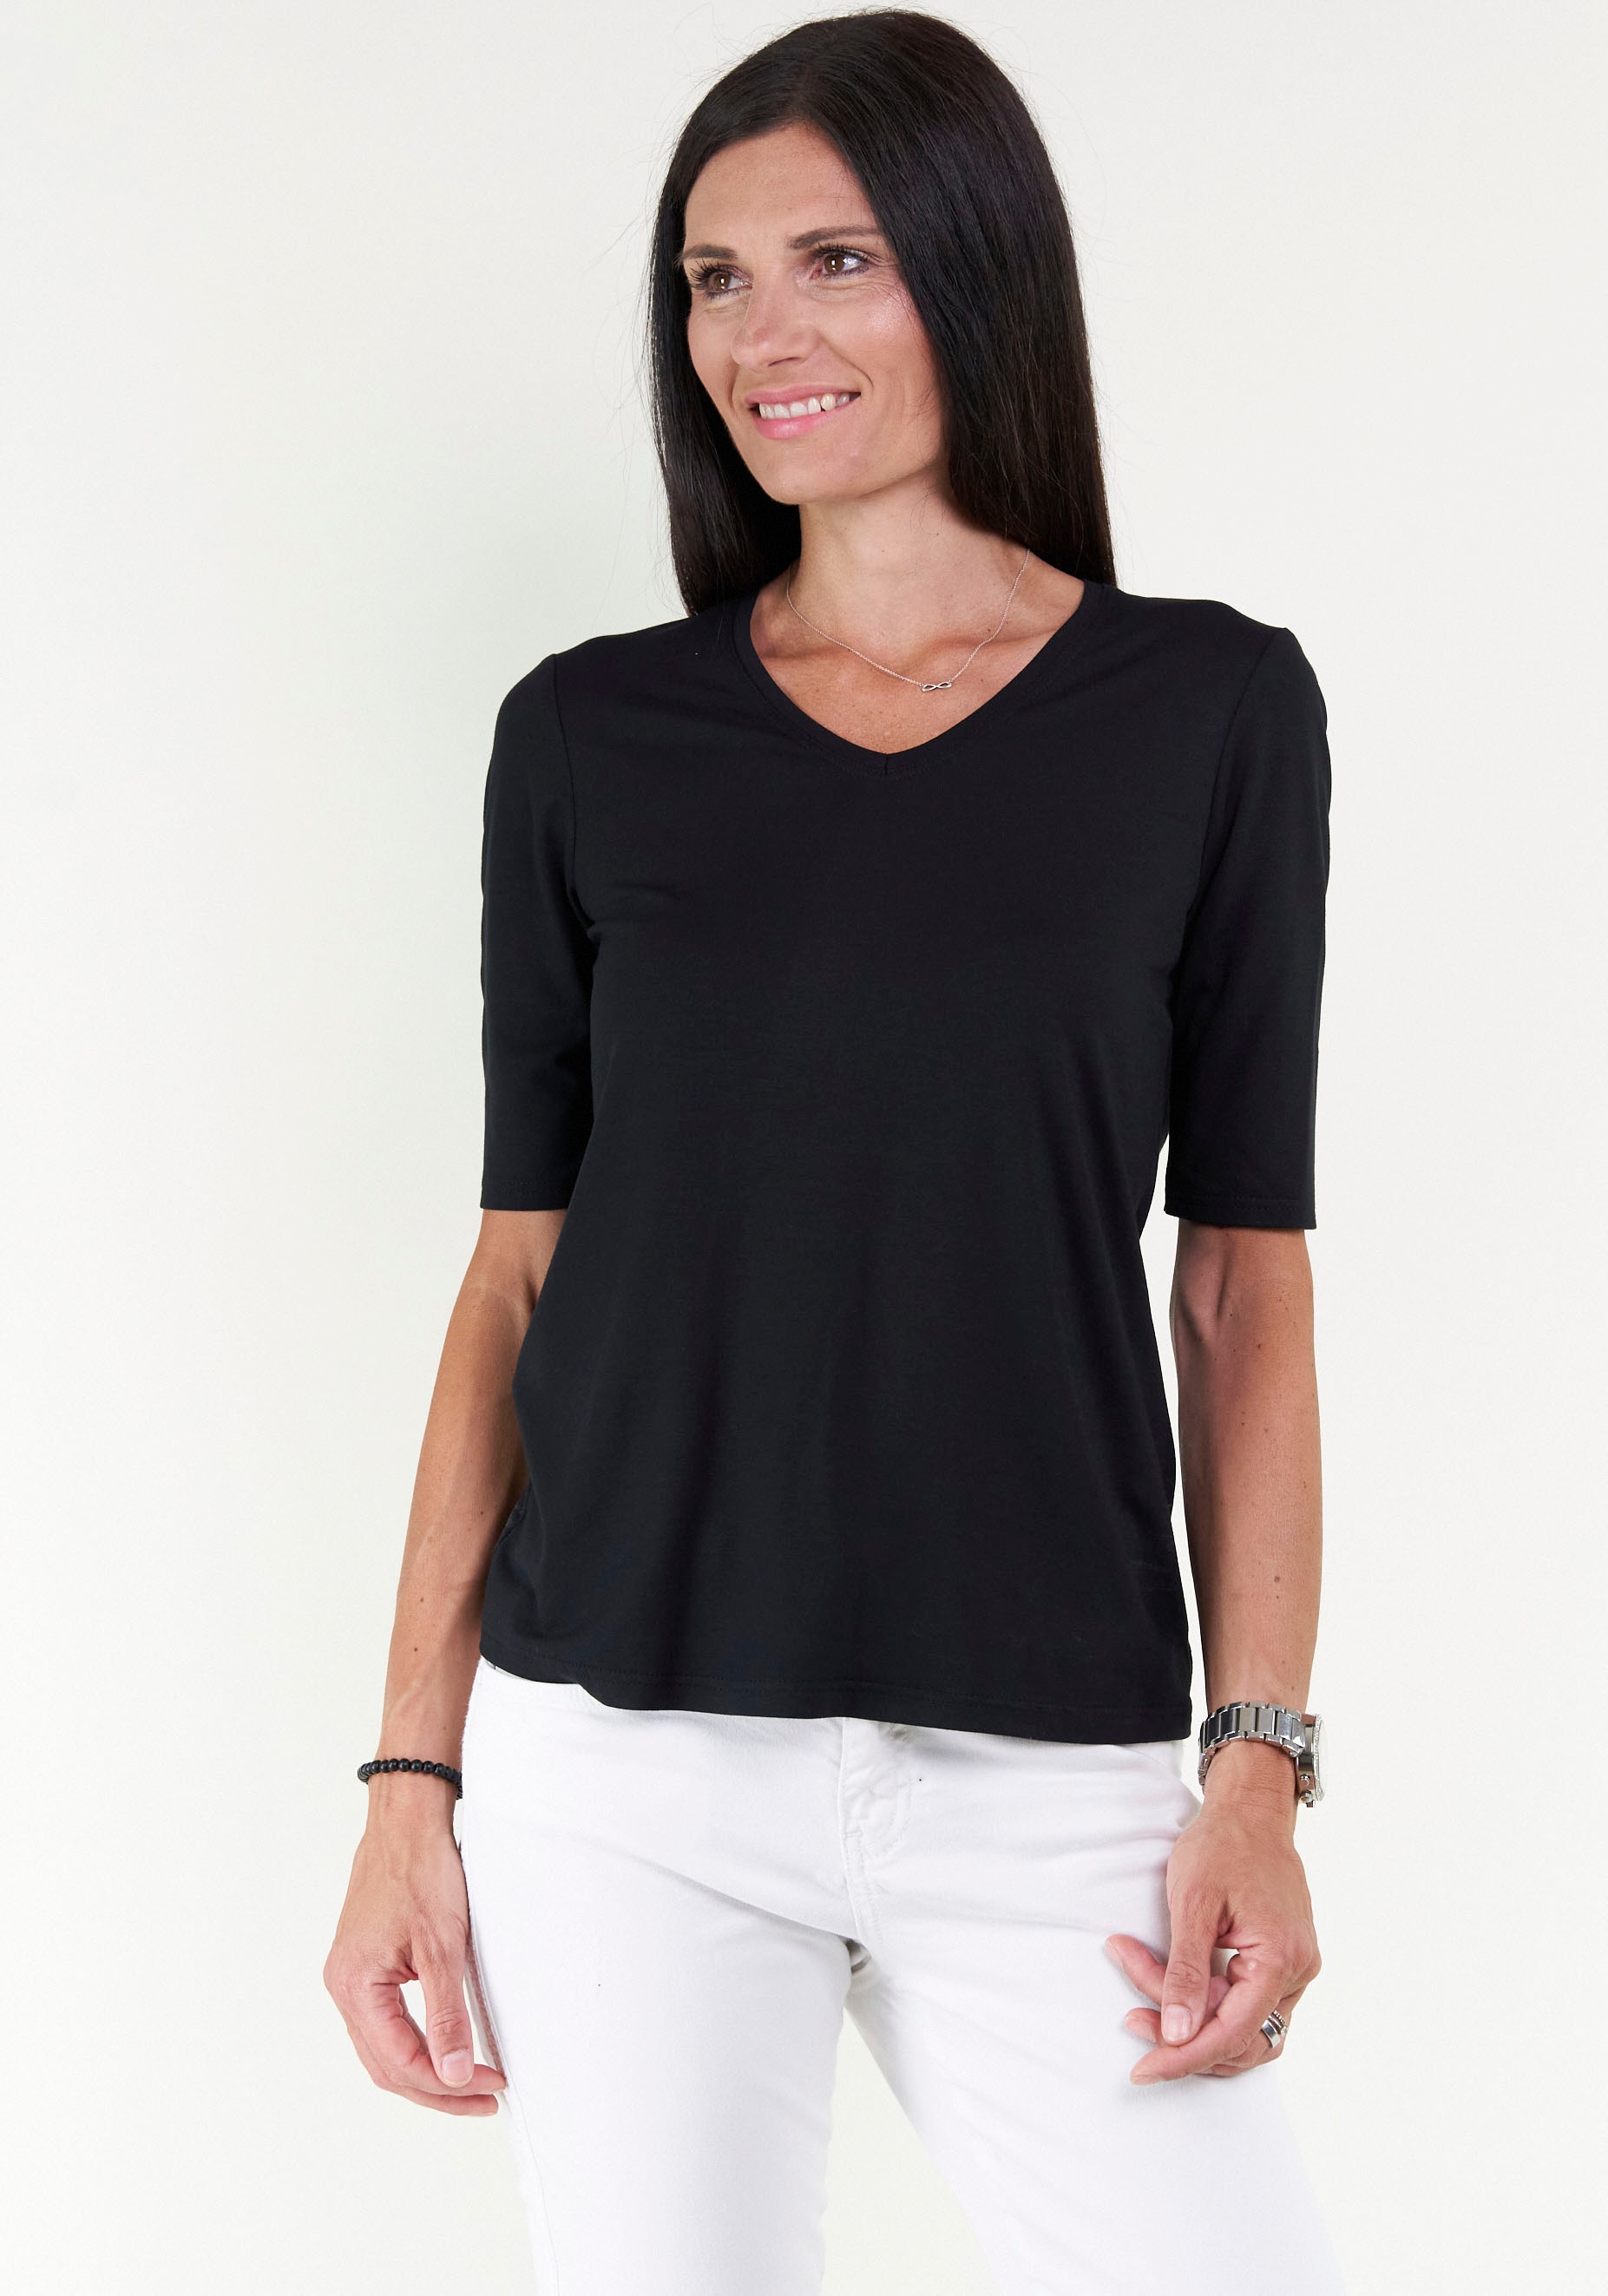 Seidel Moden V-Shirt, mit Halbarm aus softem Material, MADE IN GERMANY  online kaufen bei Jelmoli-Versand Schweiz | V-Shirts